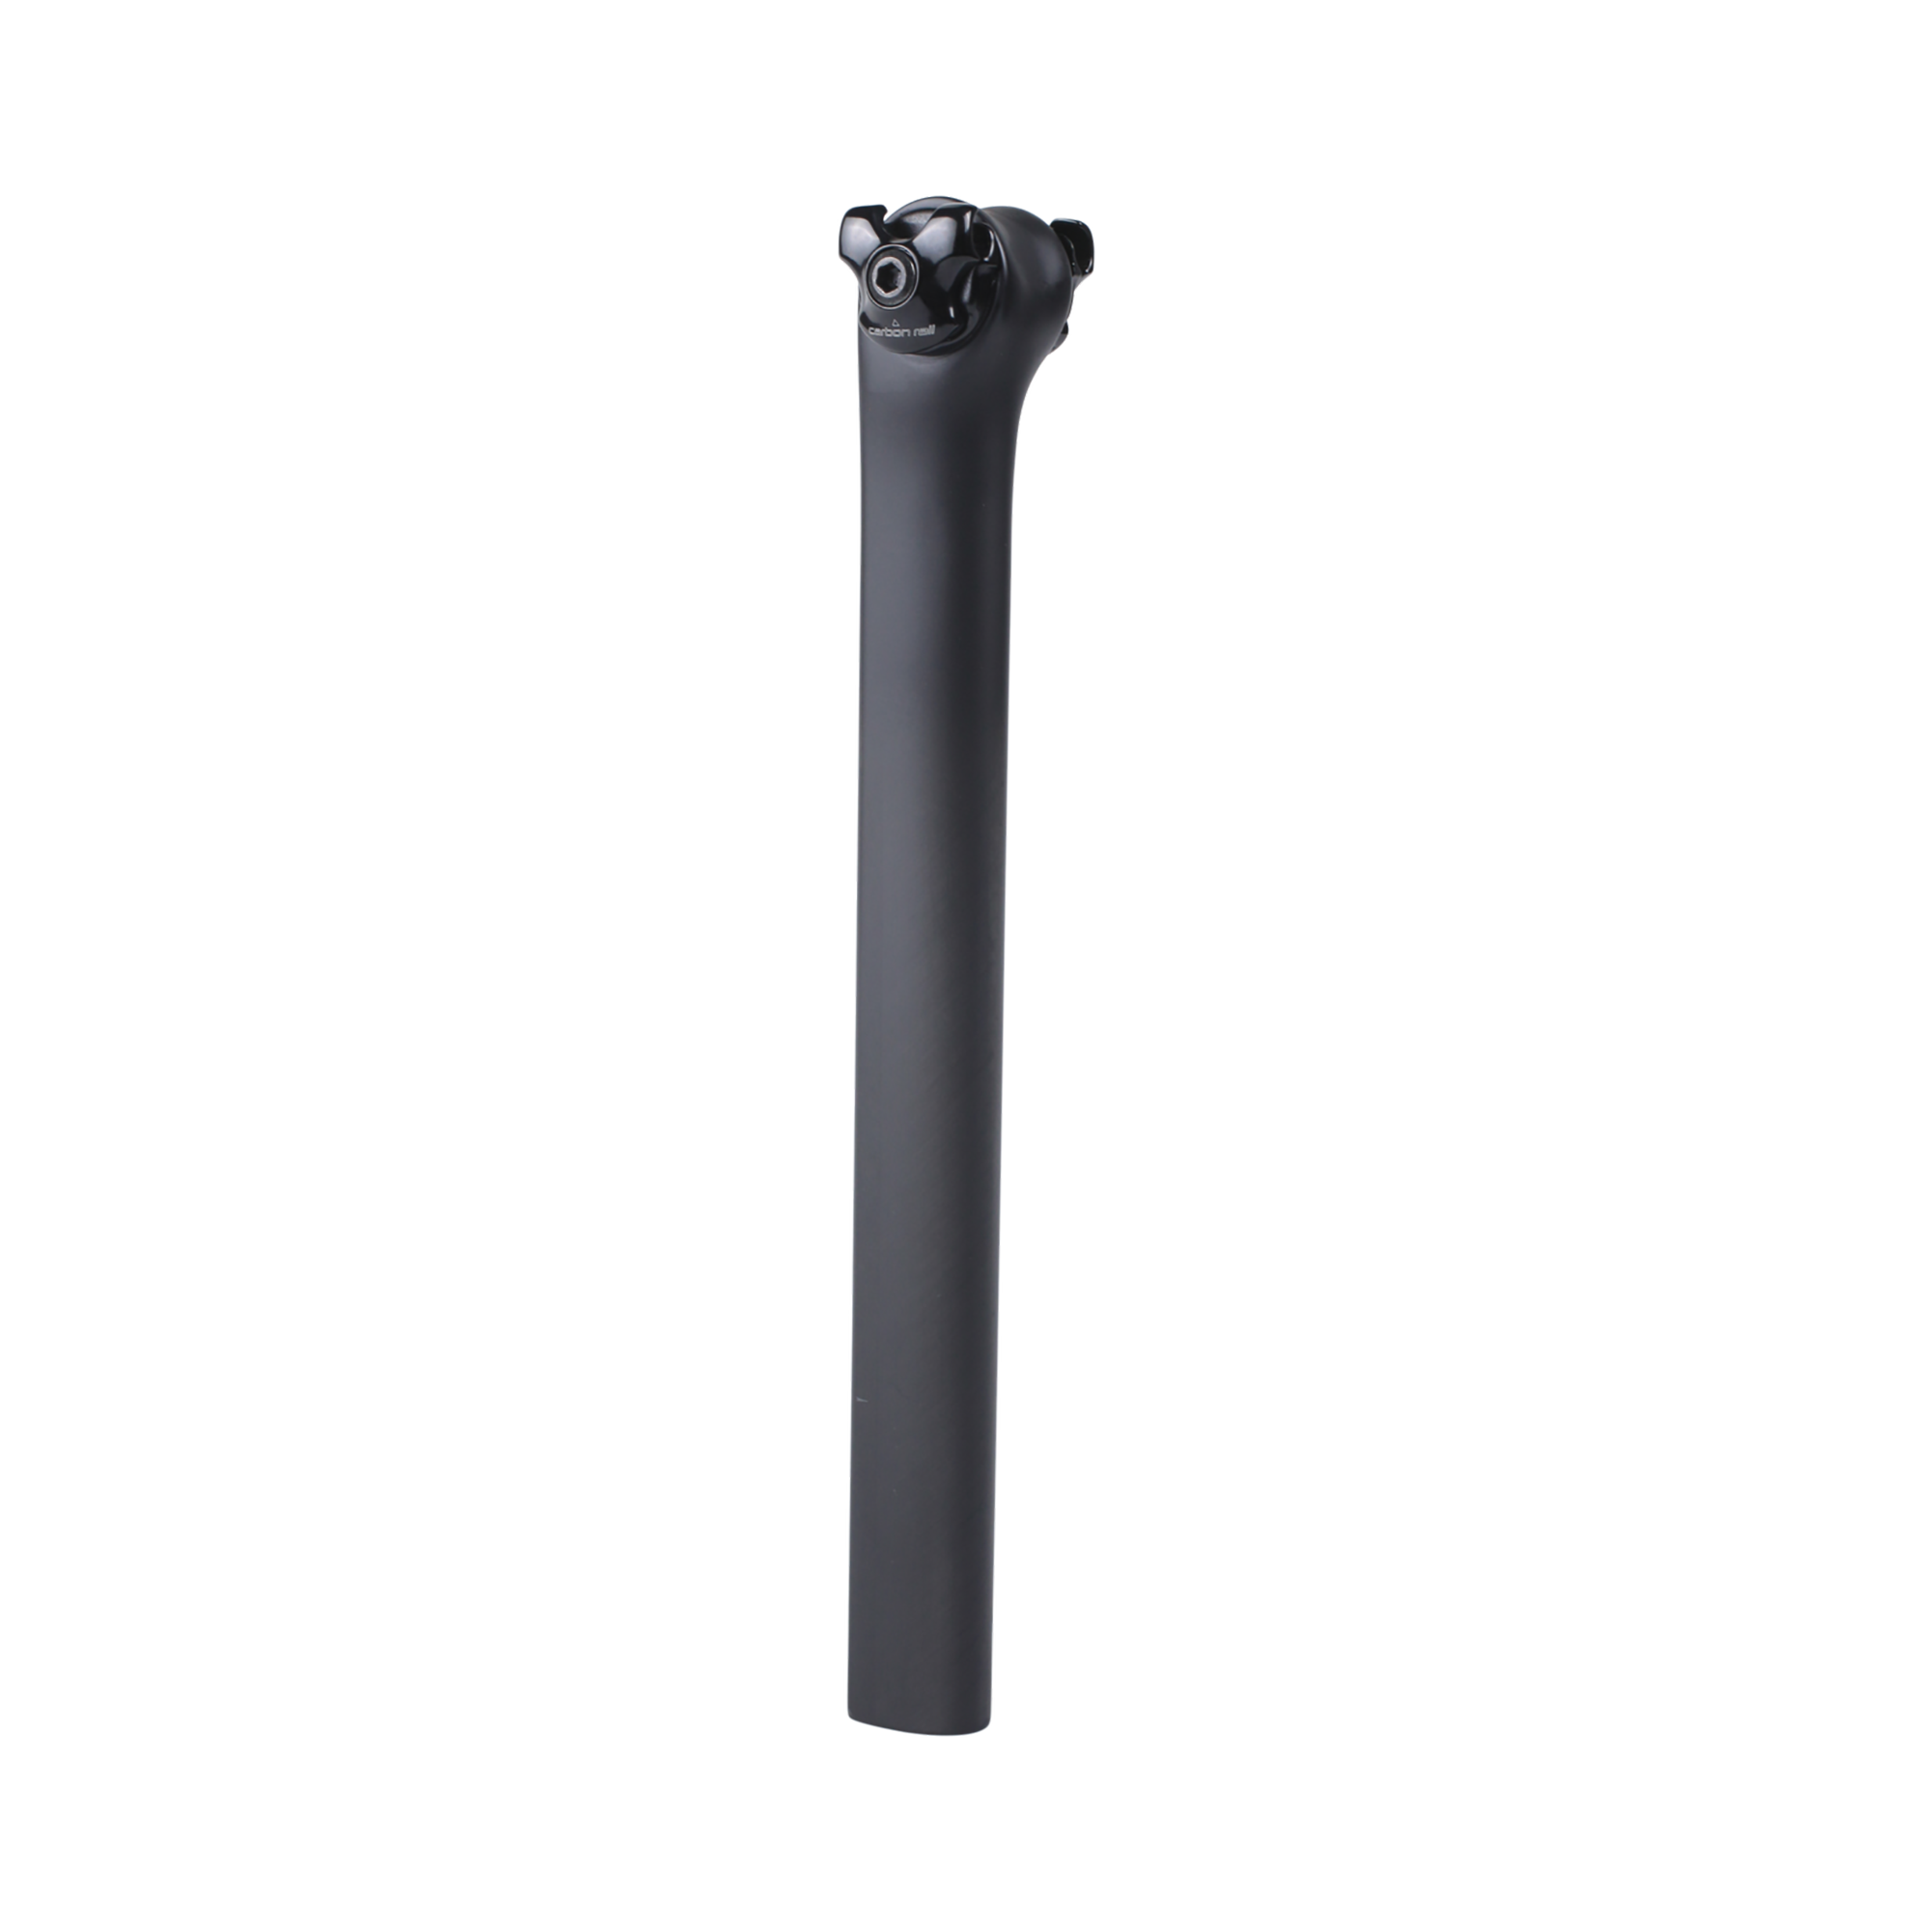 Karbonowa sztyca S-Works FACT Tarmac SL6, 0 mm offset, długość 320 mm